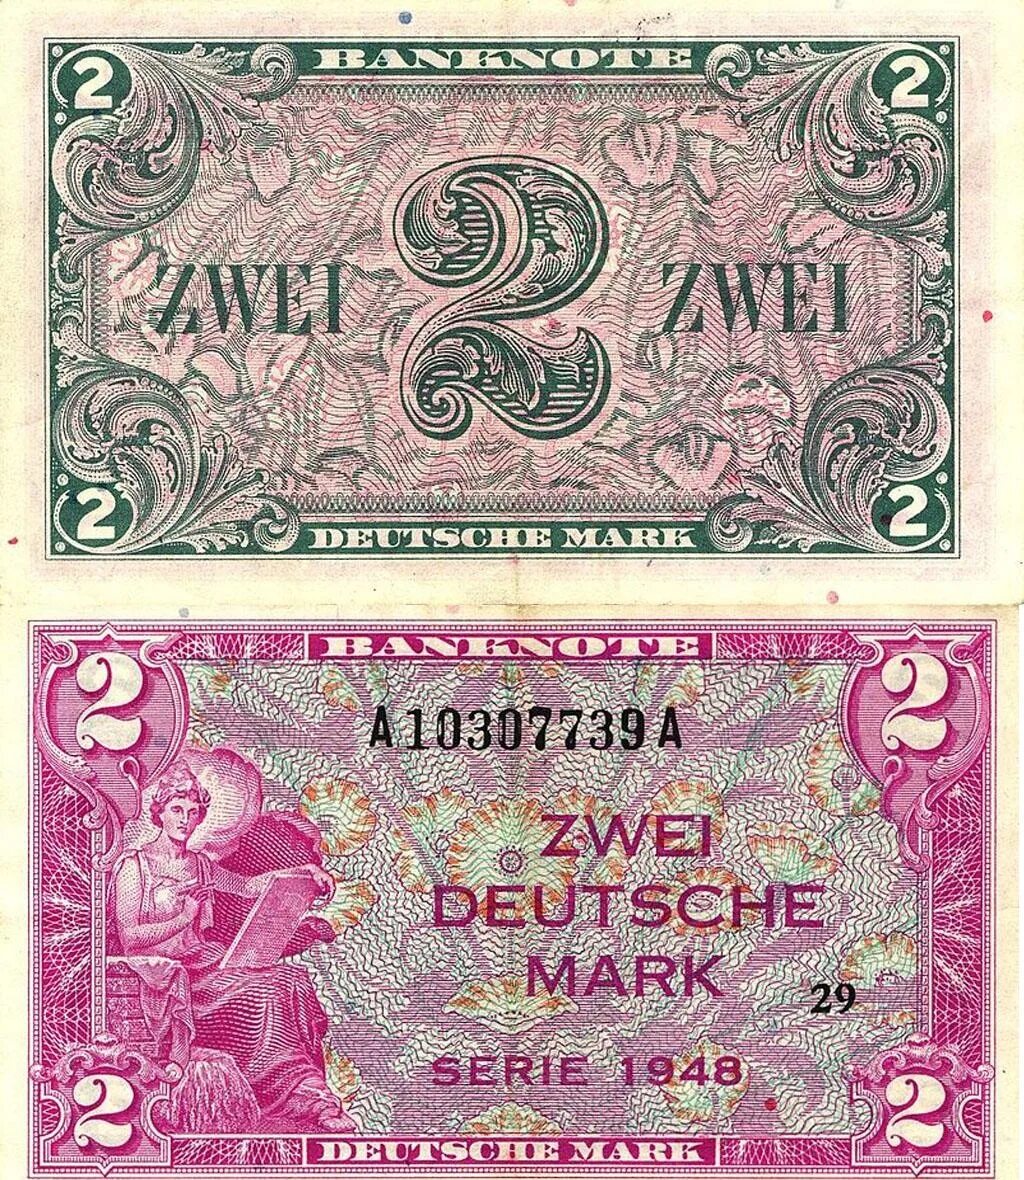 Купюра марка. Марки ФРГ банкноты. Немецкая марка. Немецкие марки купюры. Германская марка валюта.